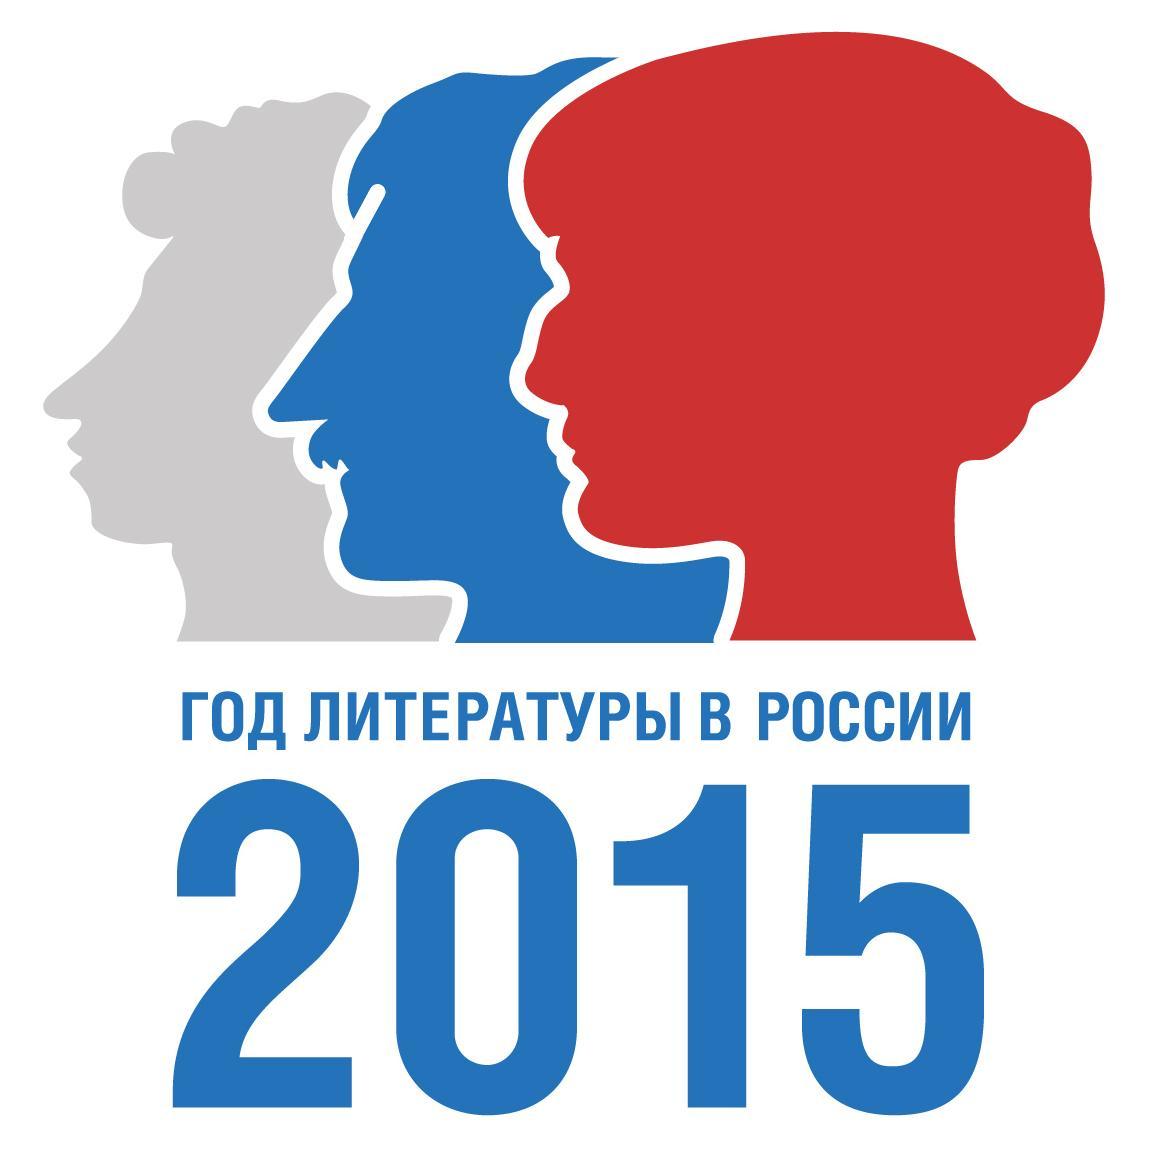 2015 – Год литературы в РФ